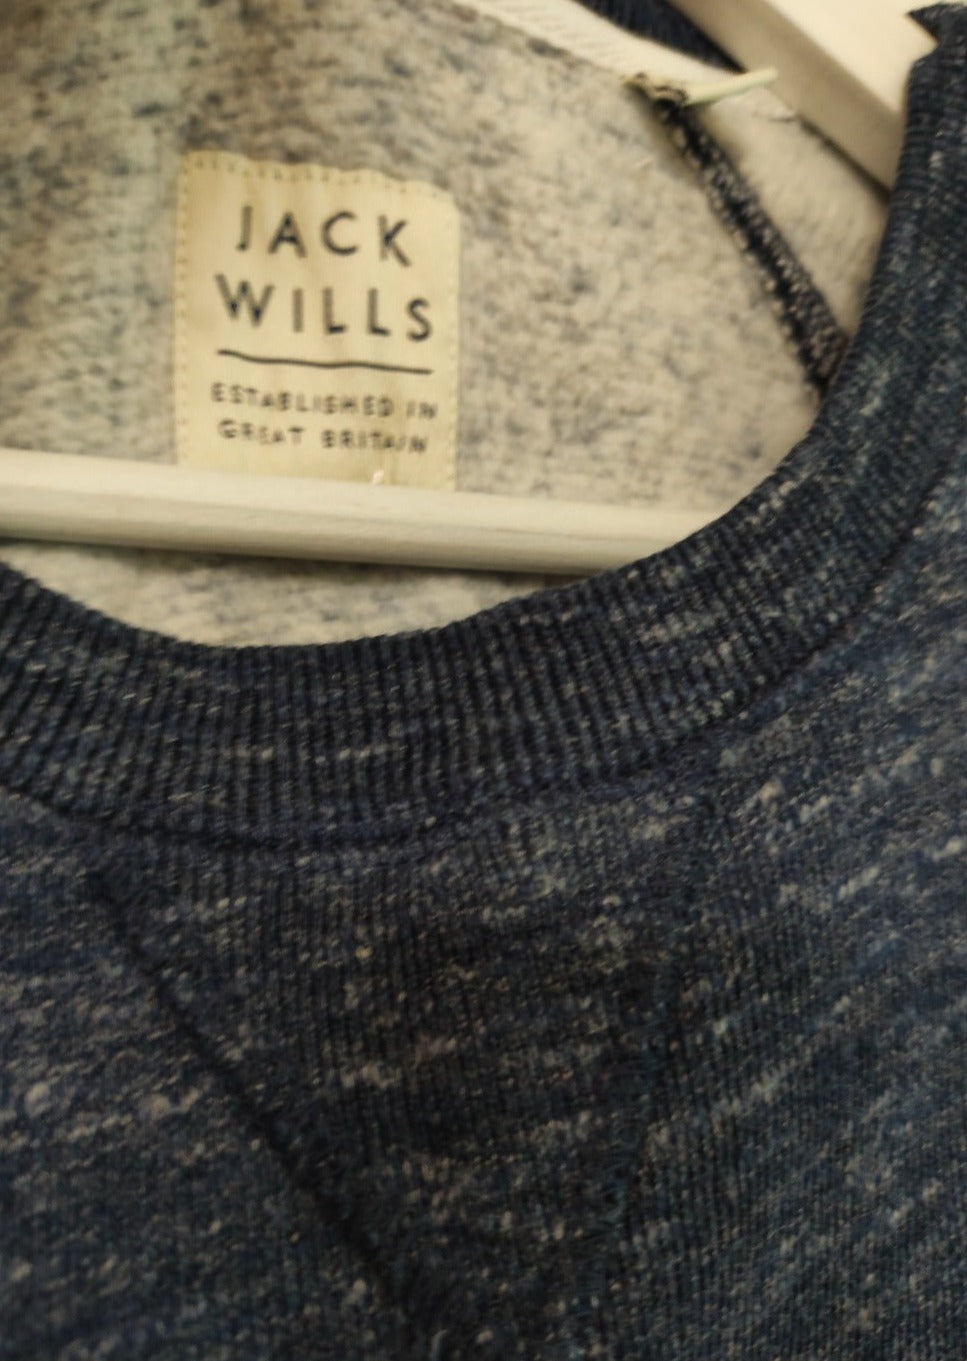 Ανδρική Φούτερ Μπλούζα JACK WILLS σε Σιέλ - Γκρι Χρώμα (Medium)